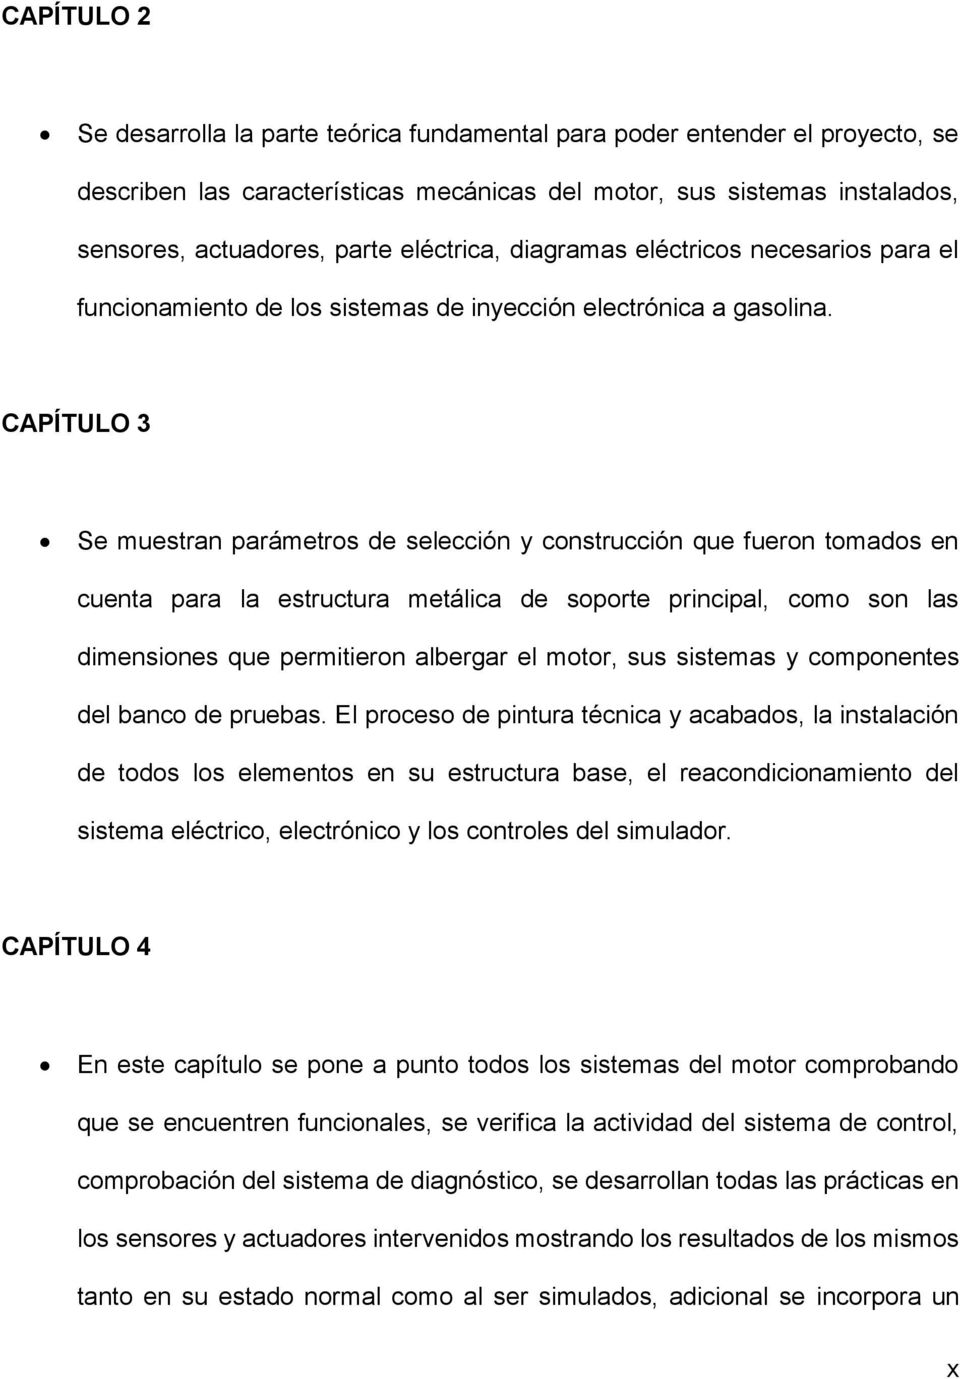 CAPÍTULO 3 Se muestran parámetros de selección y construcción que fueron tomados en cuenta para la estructura metálica de soporte principal, como son las dimensiones que permitieron albergar el